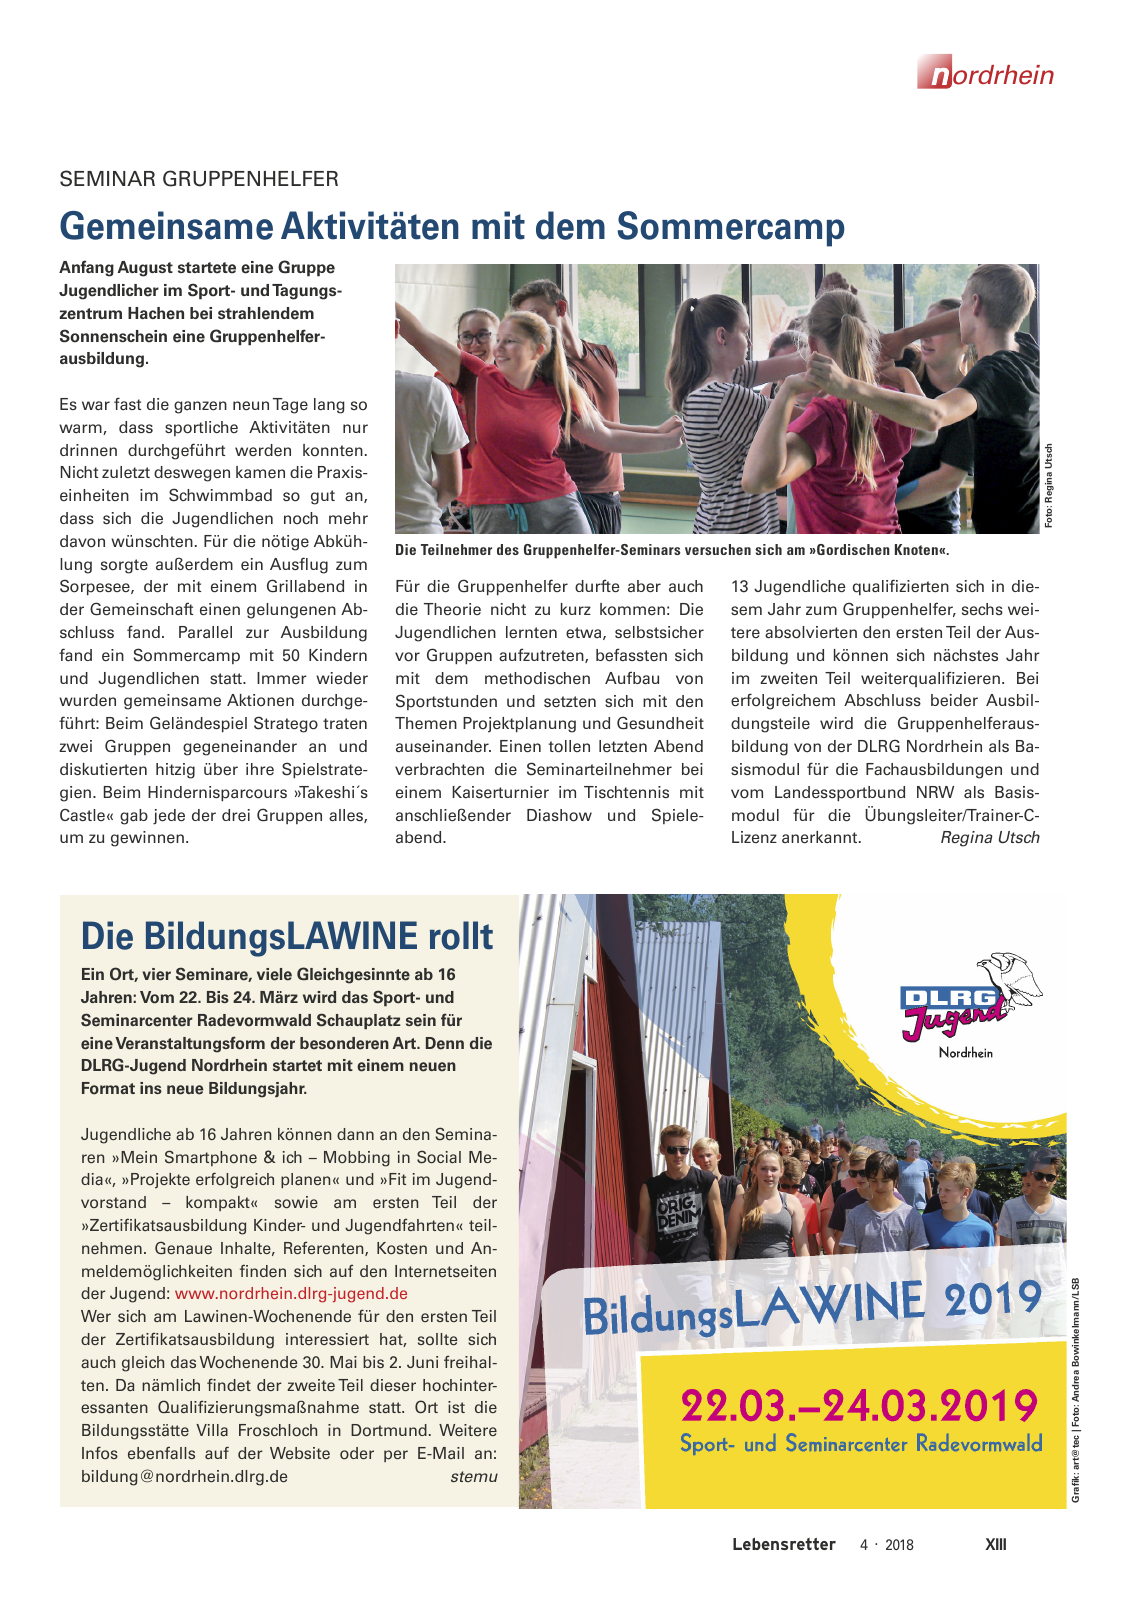 Vorschau Lebensretter 4/2018 - Regionalausgabe Nordrhein Seite 15